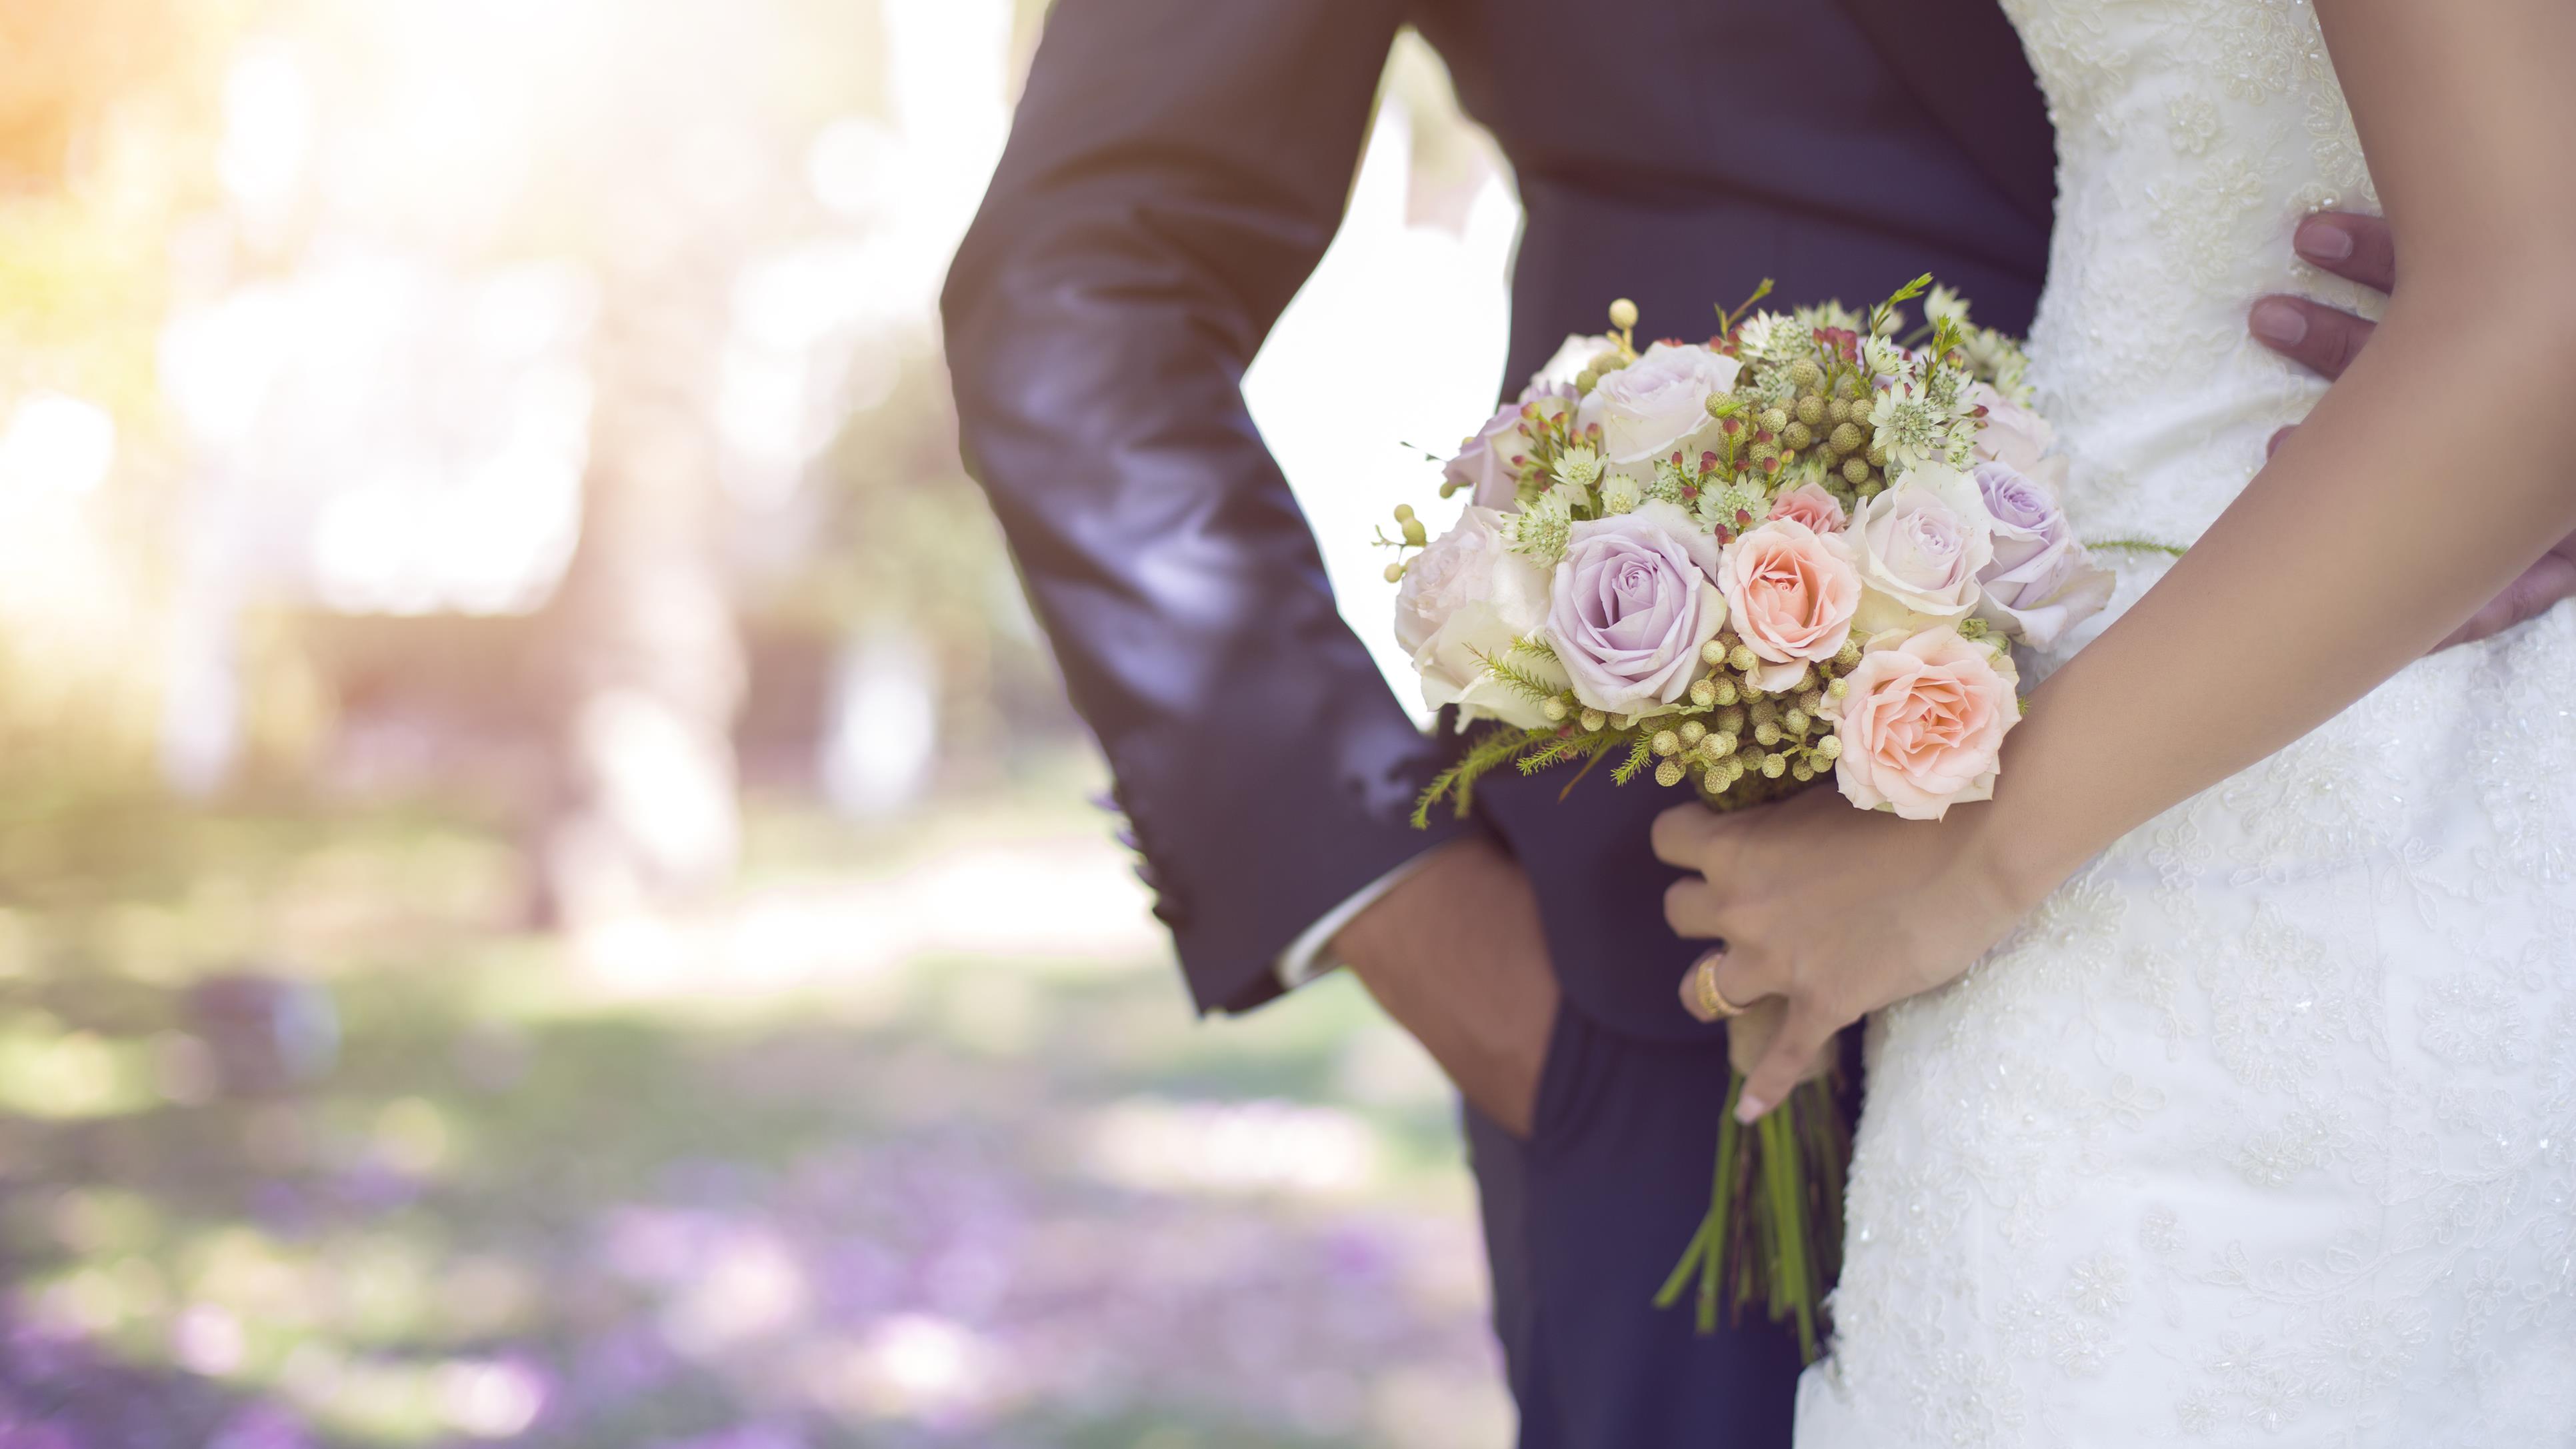 Les fleurs, symboles essentiels de la saison des mariages